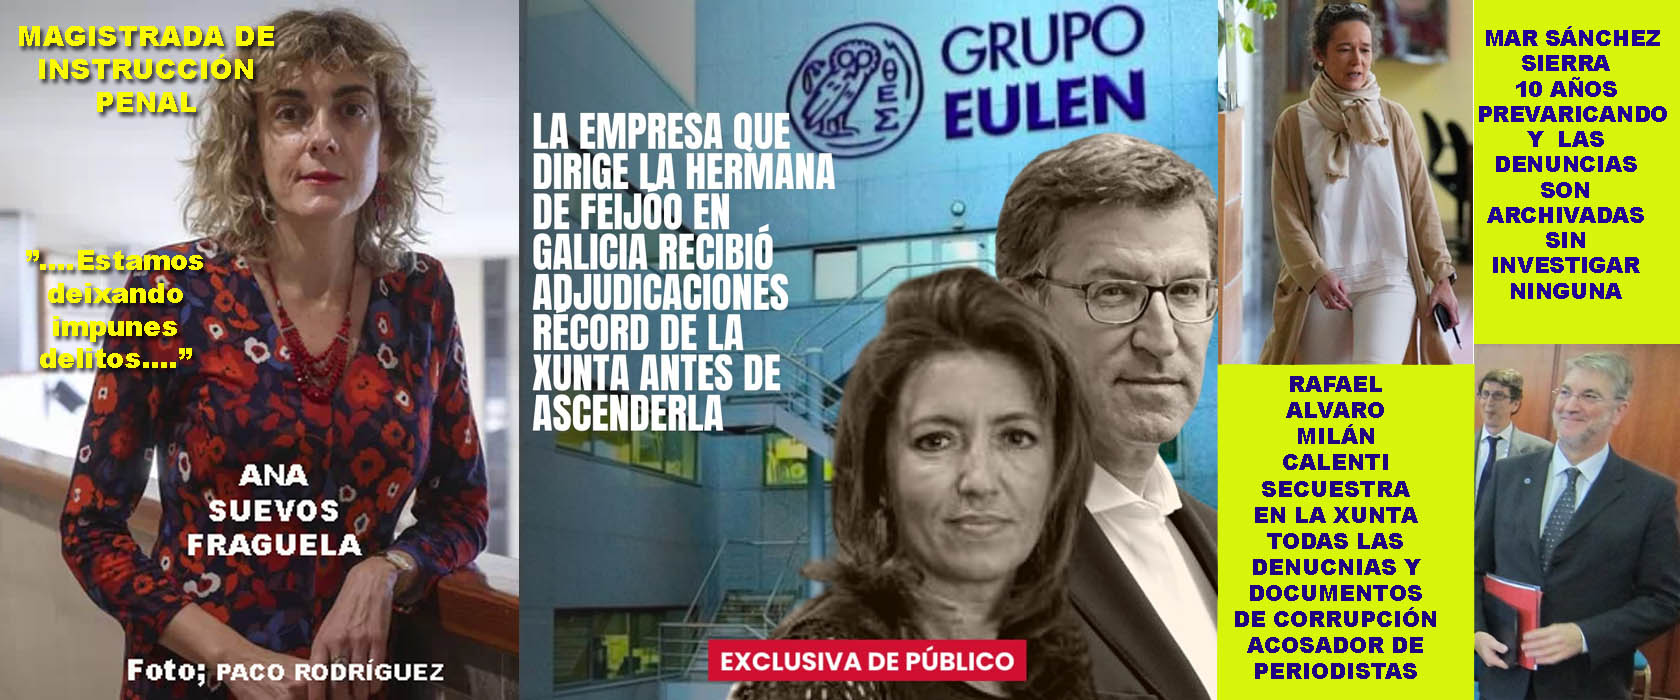 Xornal Galicia - Feijóo en Bruxelas se tira "EL MOCO" por orden de María  del Mar, afirmando que en el PP no cabe la corrupción ja, ja, ja, jaaaa